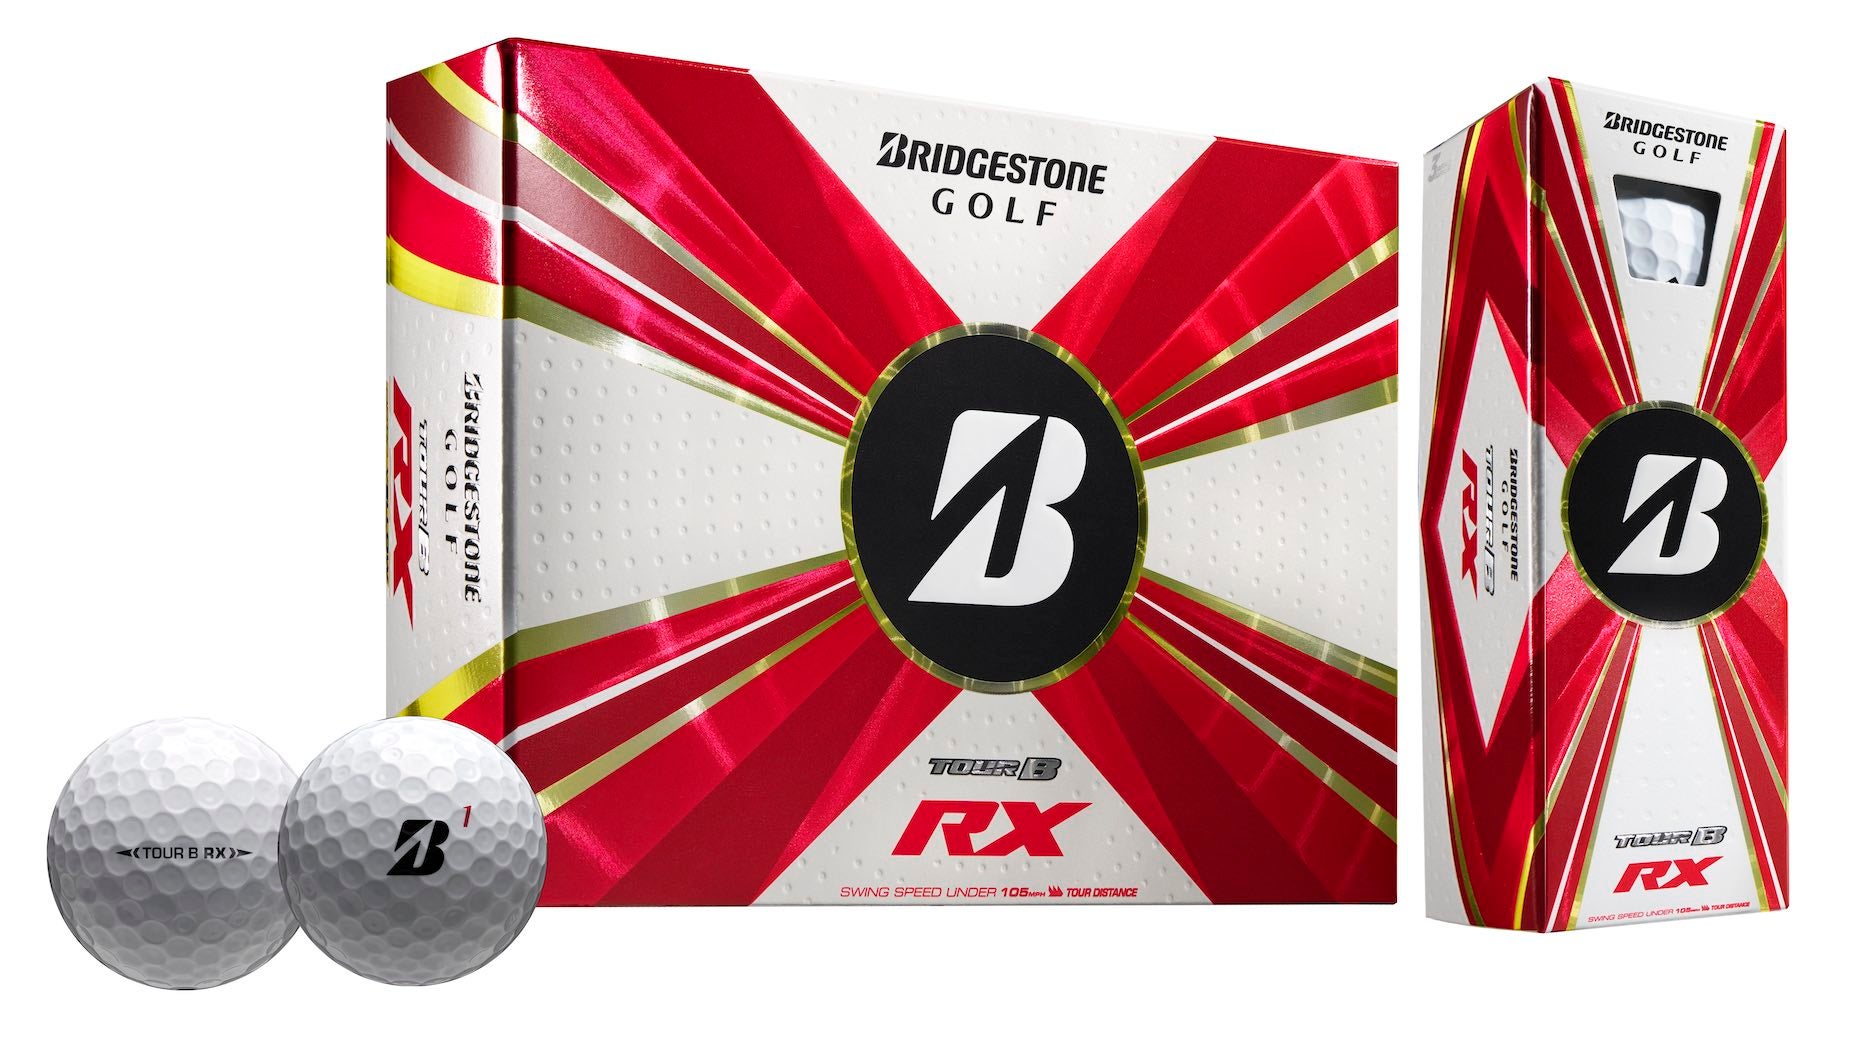 Bridgestone's Tour B X, Tour B XS, Tour B RX and Tour B RXS golf balls